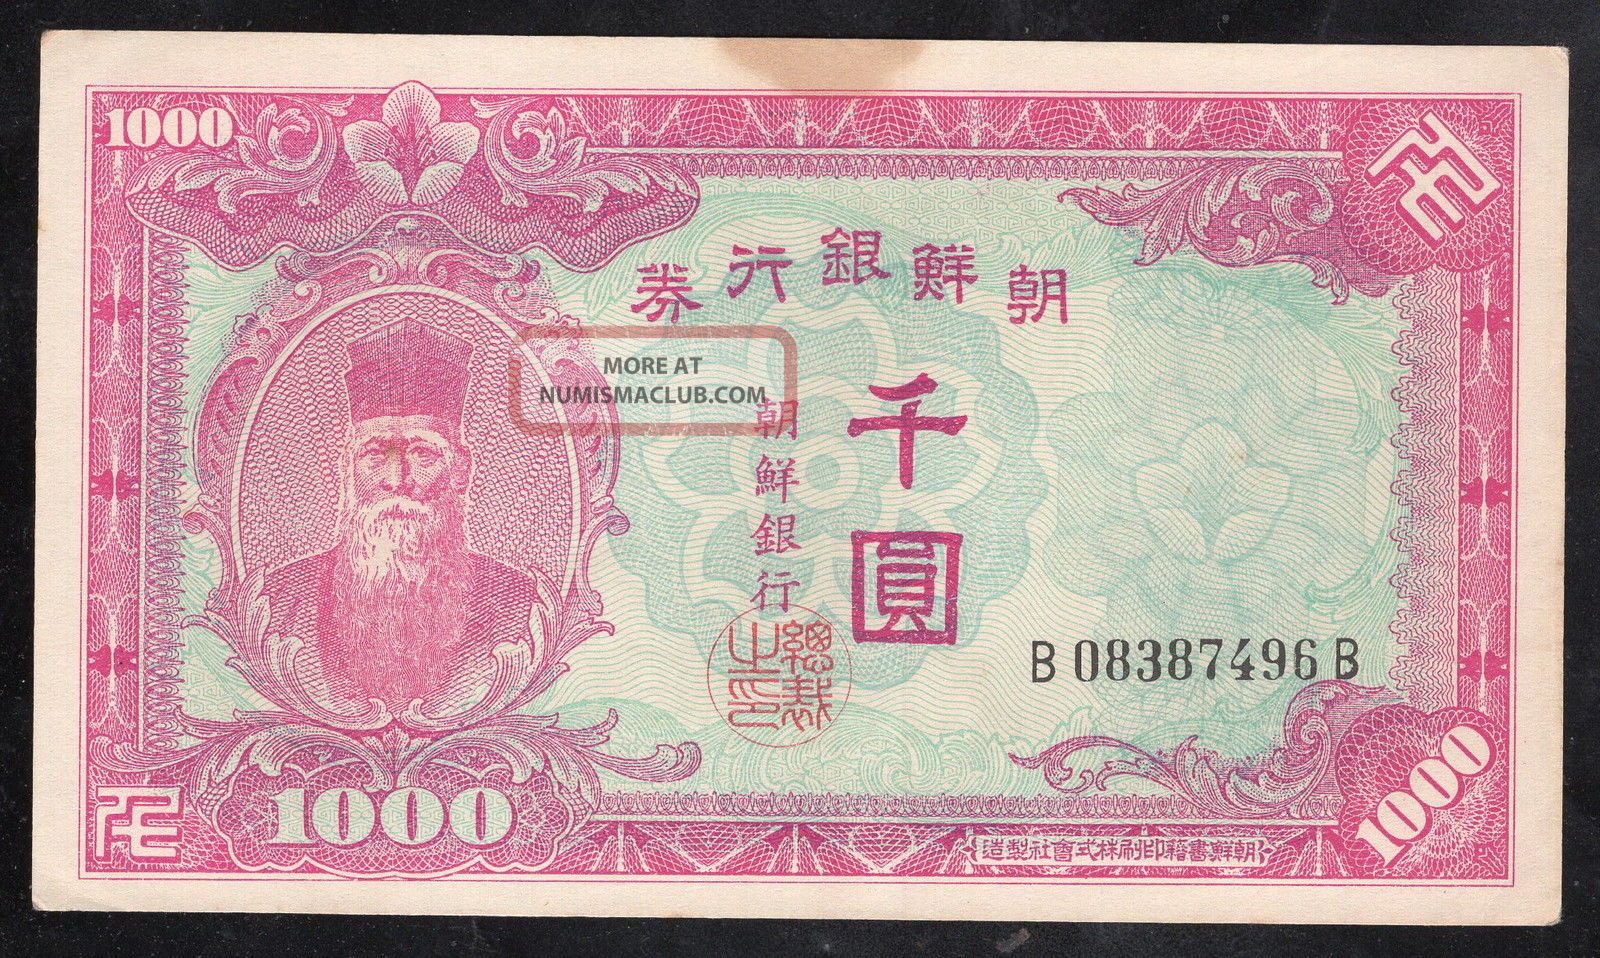 Korea 1000 Won Bank Of Chosen (p3) Sn - B08387496b Asia photo